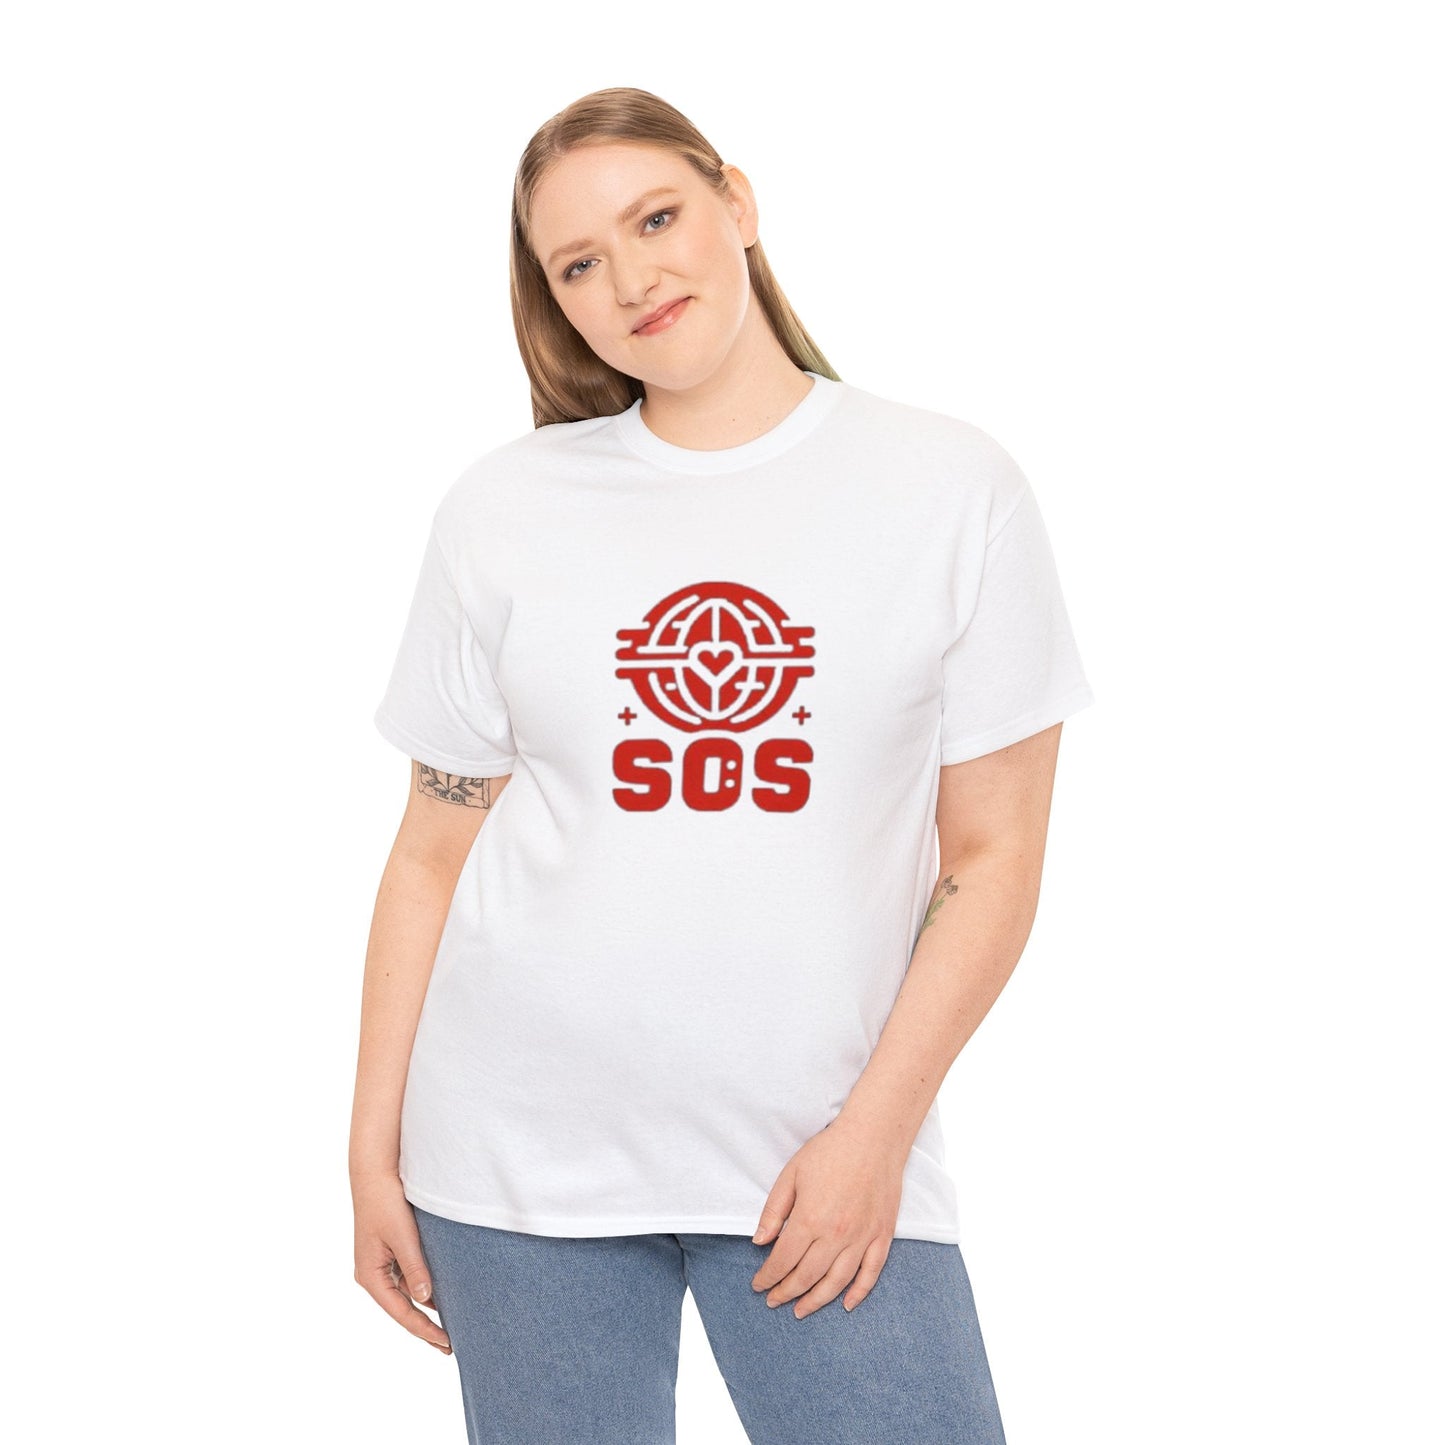 Copie de ¨SOS Wear: T-shirts Personalises pour un cri d'Alerte